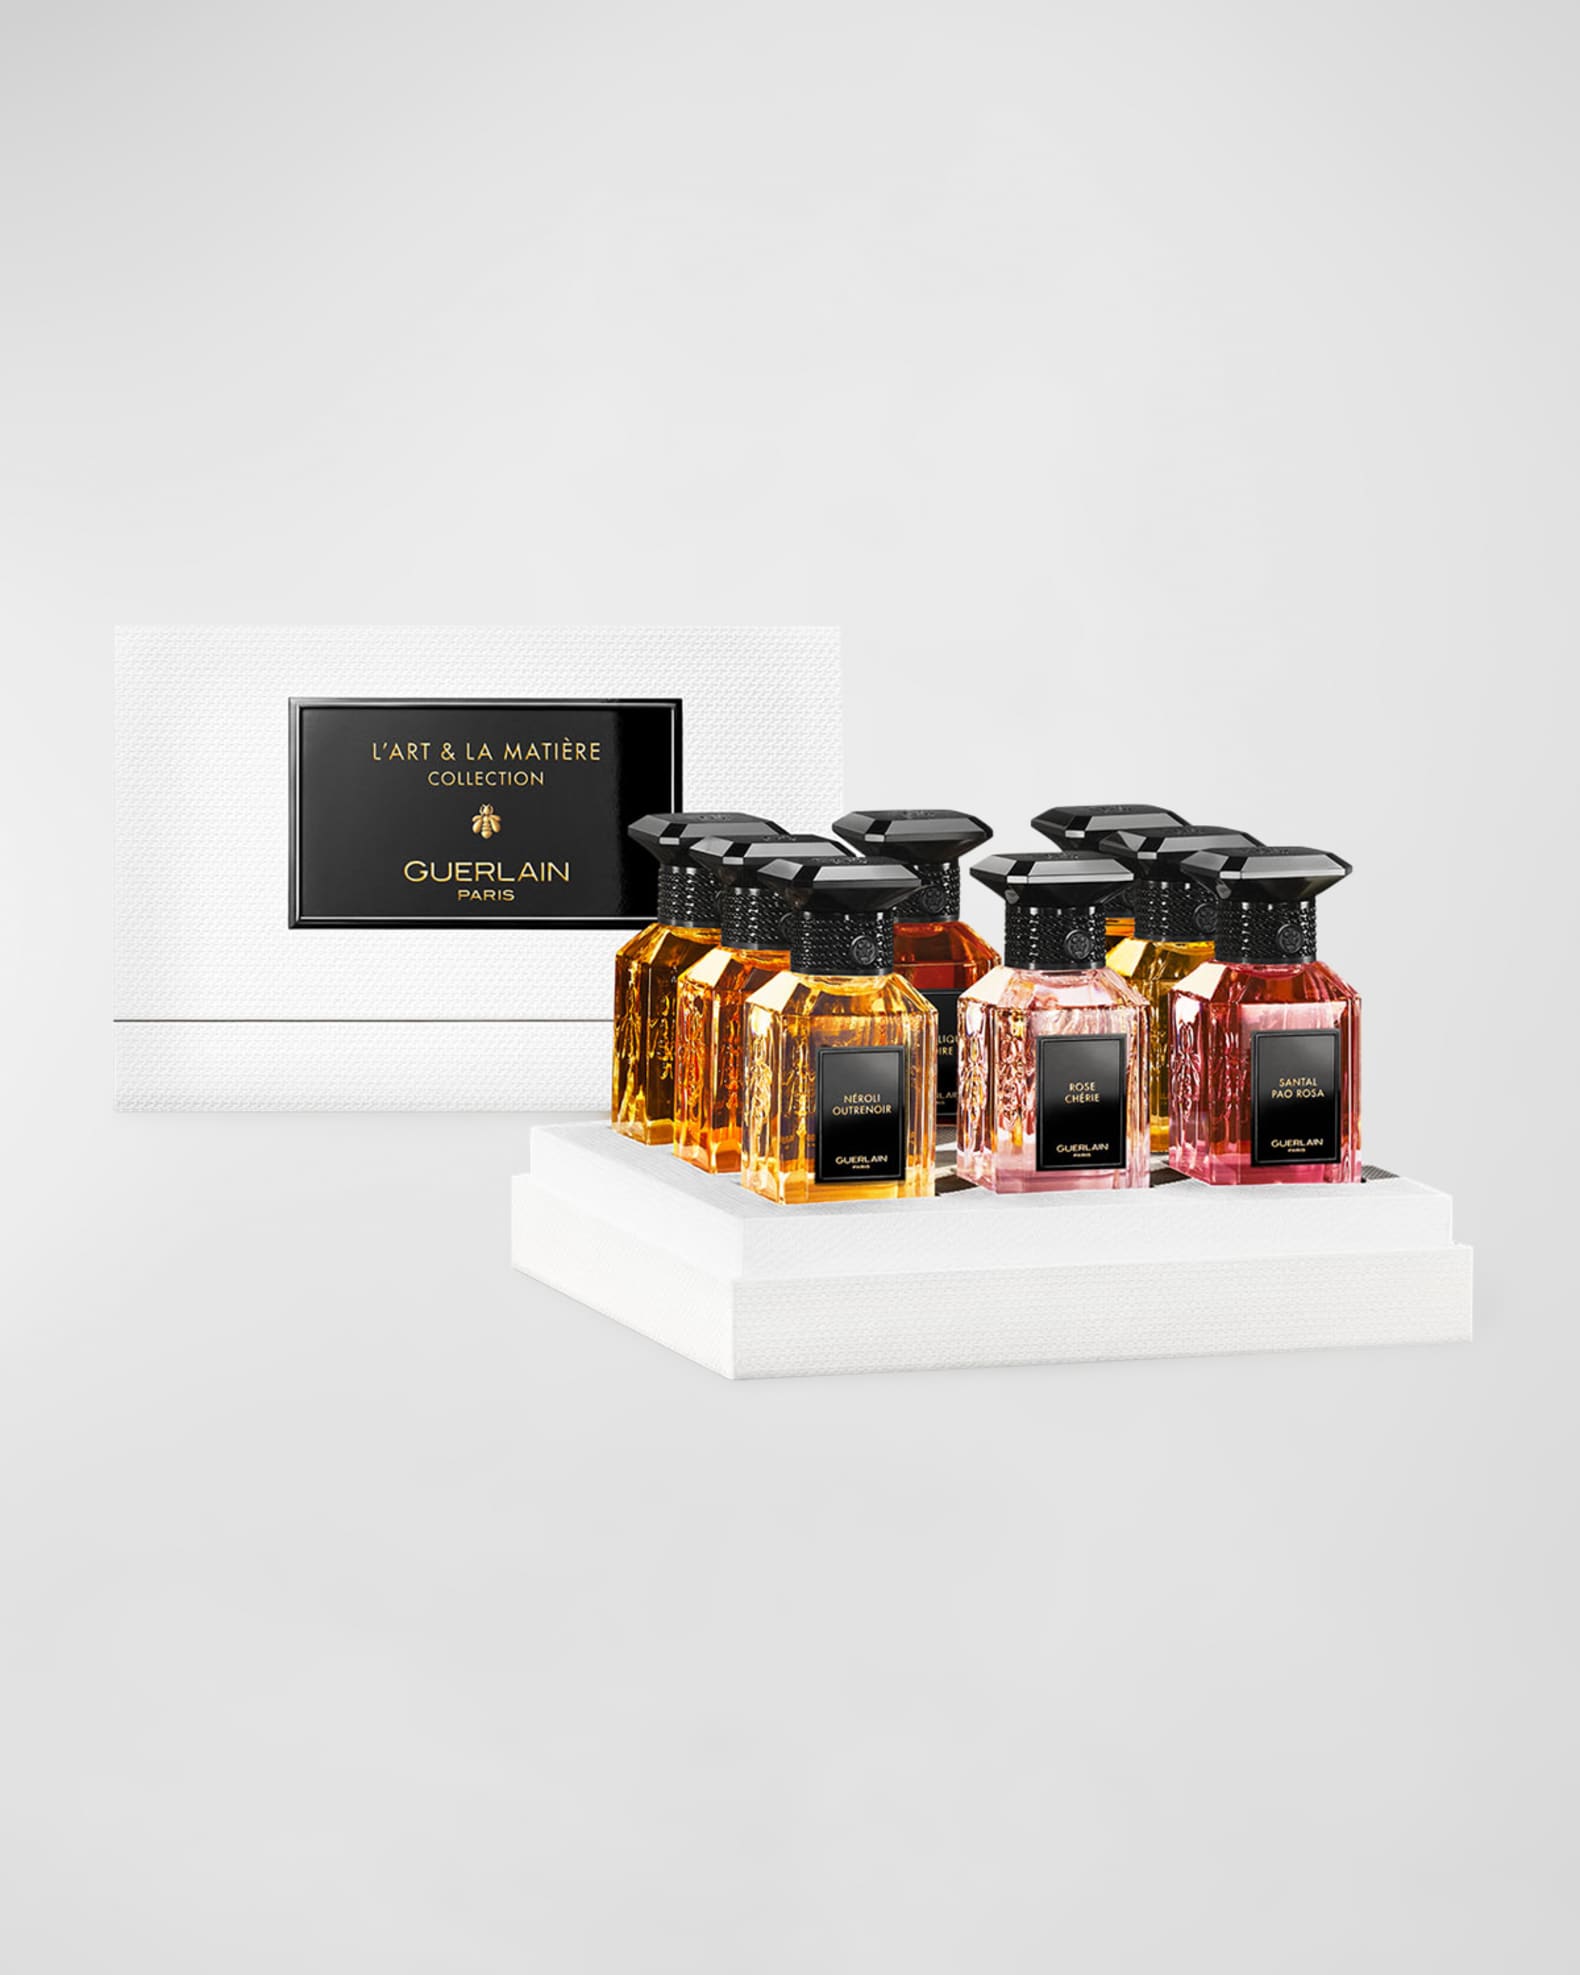 Five empty Chanel No 5 eau de parfum bottles, 100ml, boxed, a further eau  de parfum